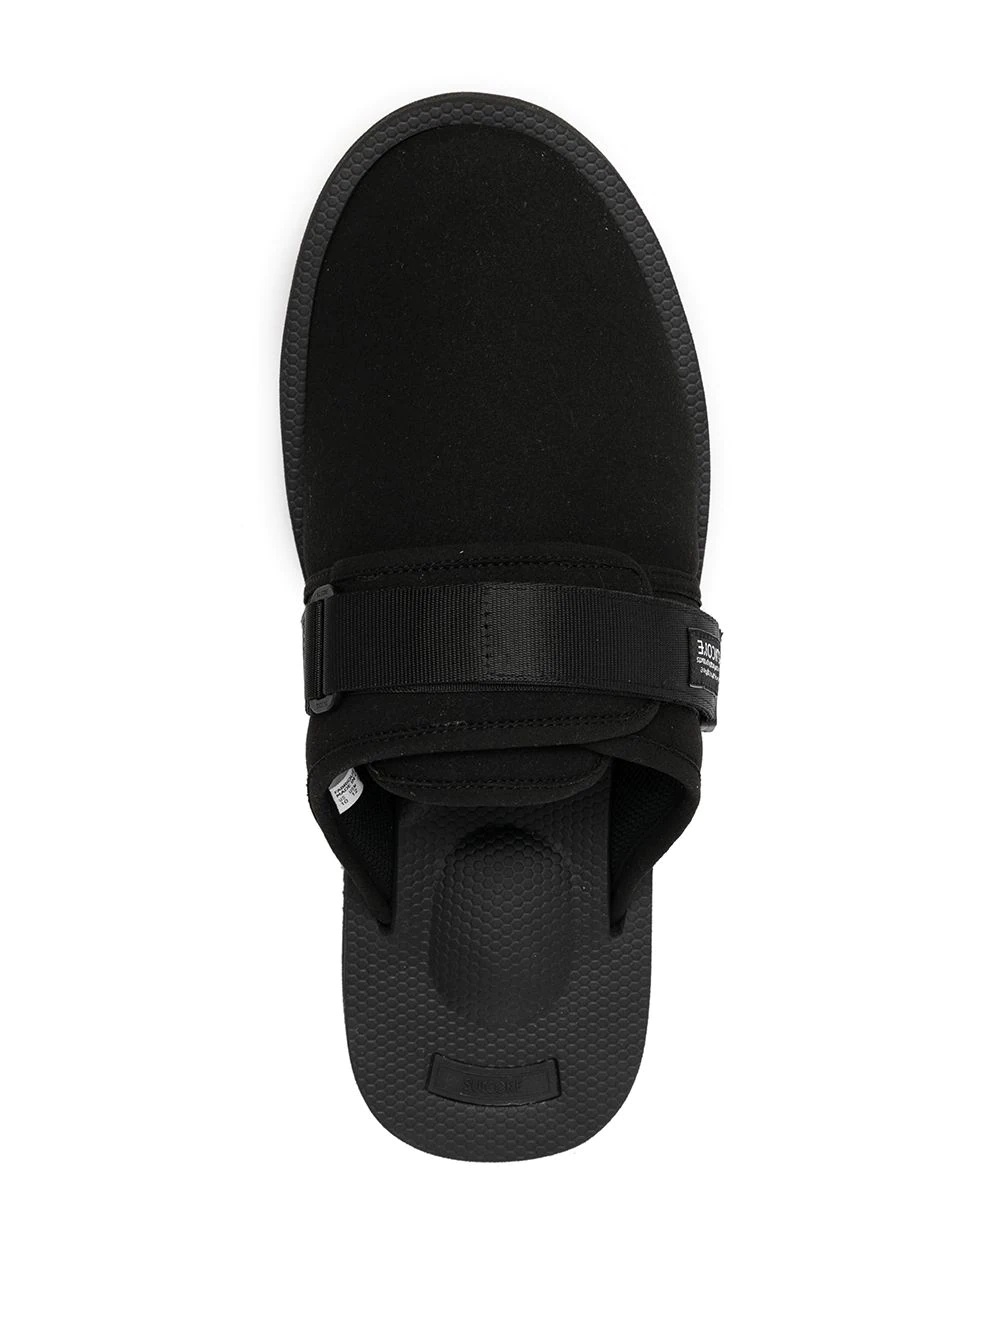 ZAVO-VPO touch-strap sandals - 4